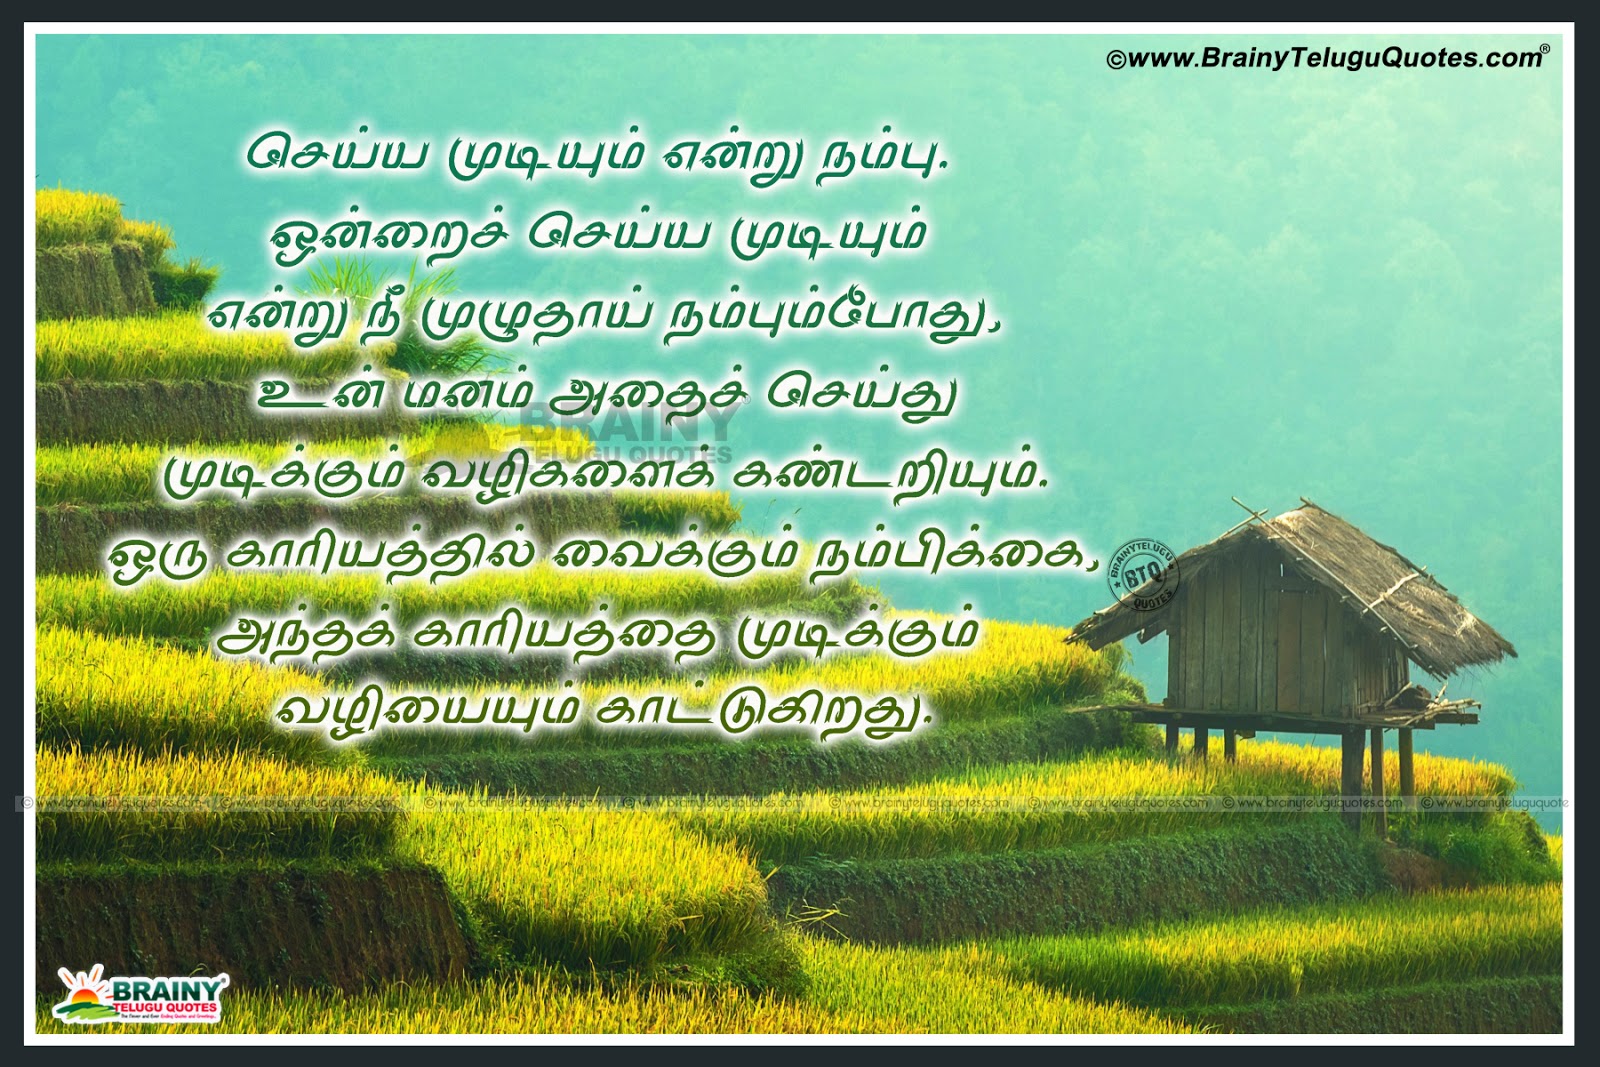 Trending Famous Tamil Inspirational Sayings in Tamil-Tamil Success